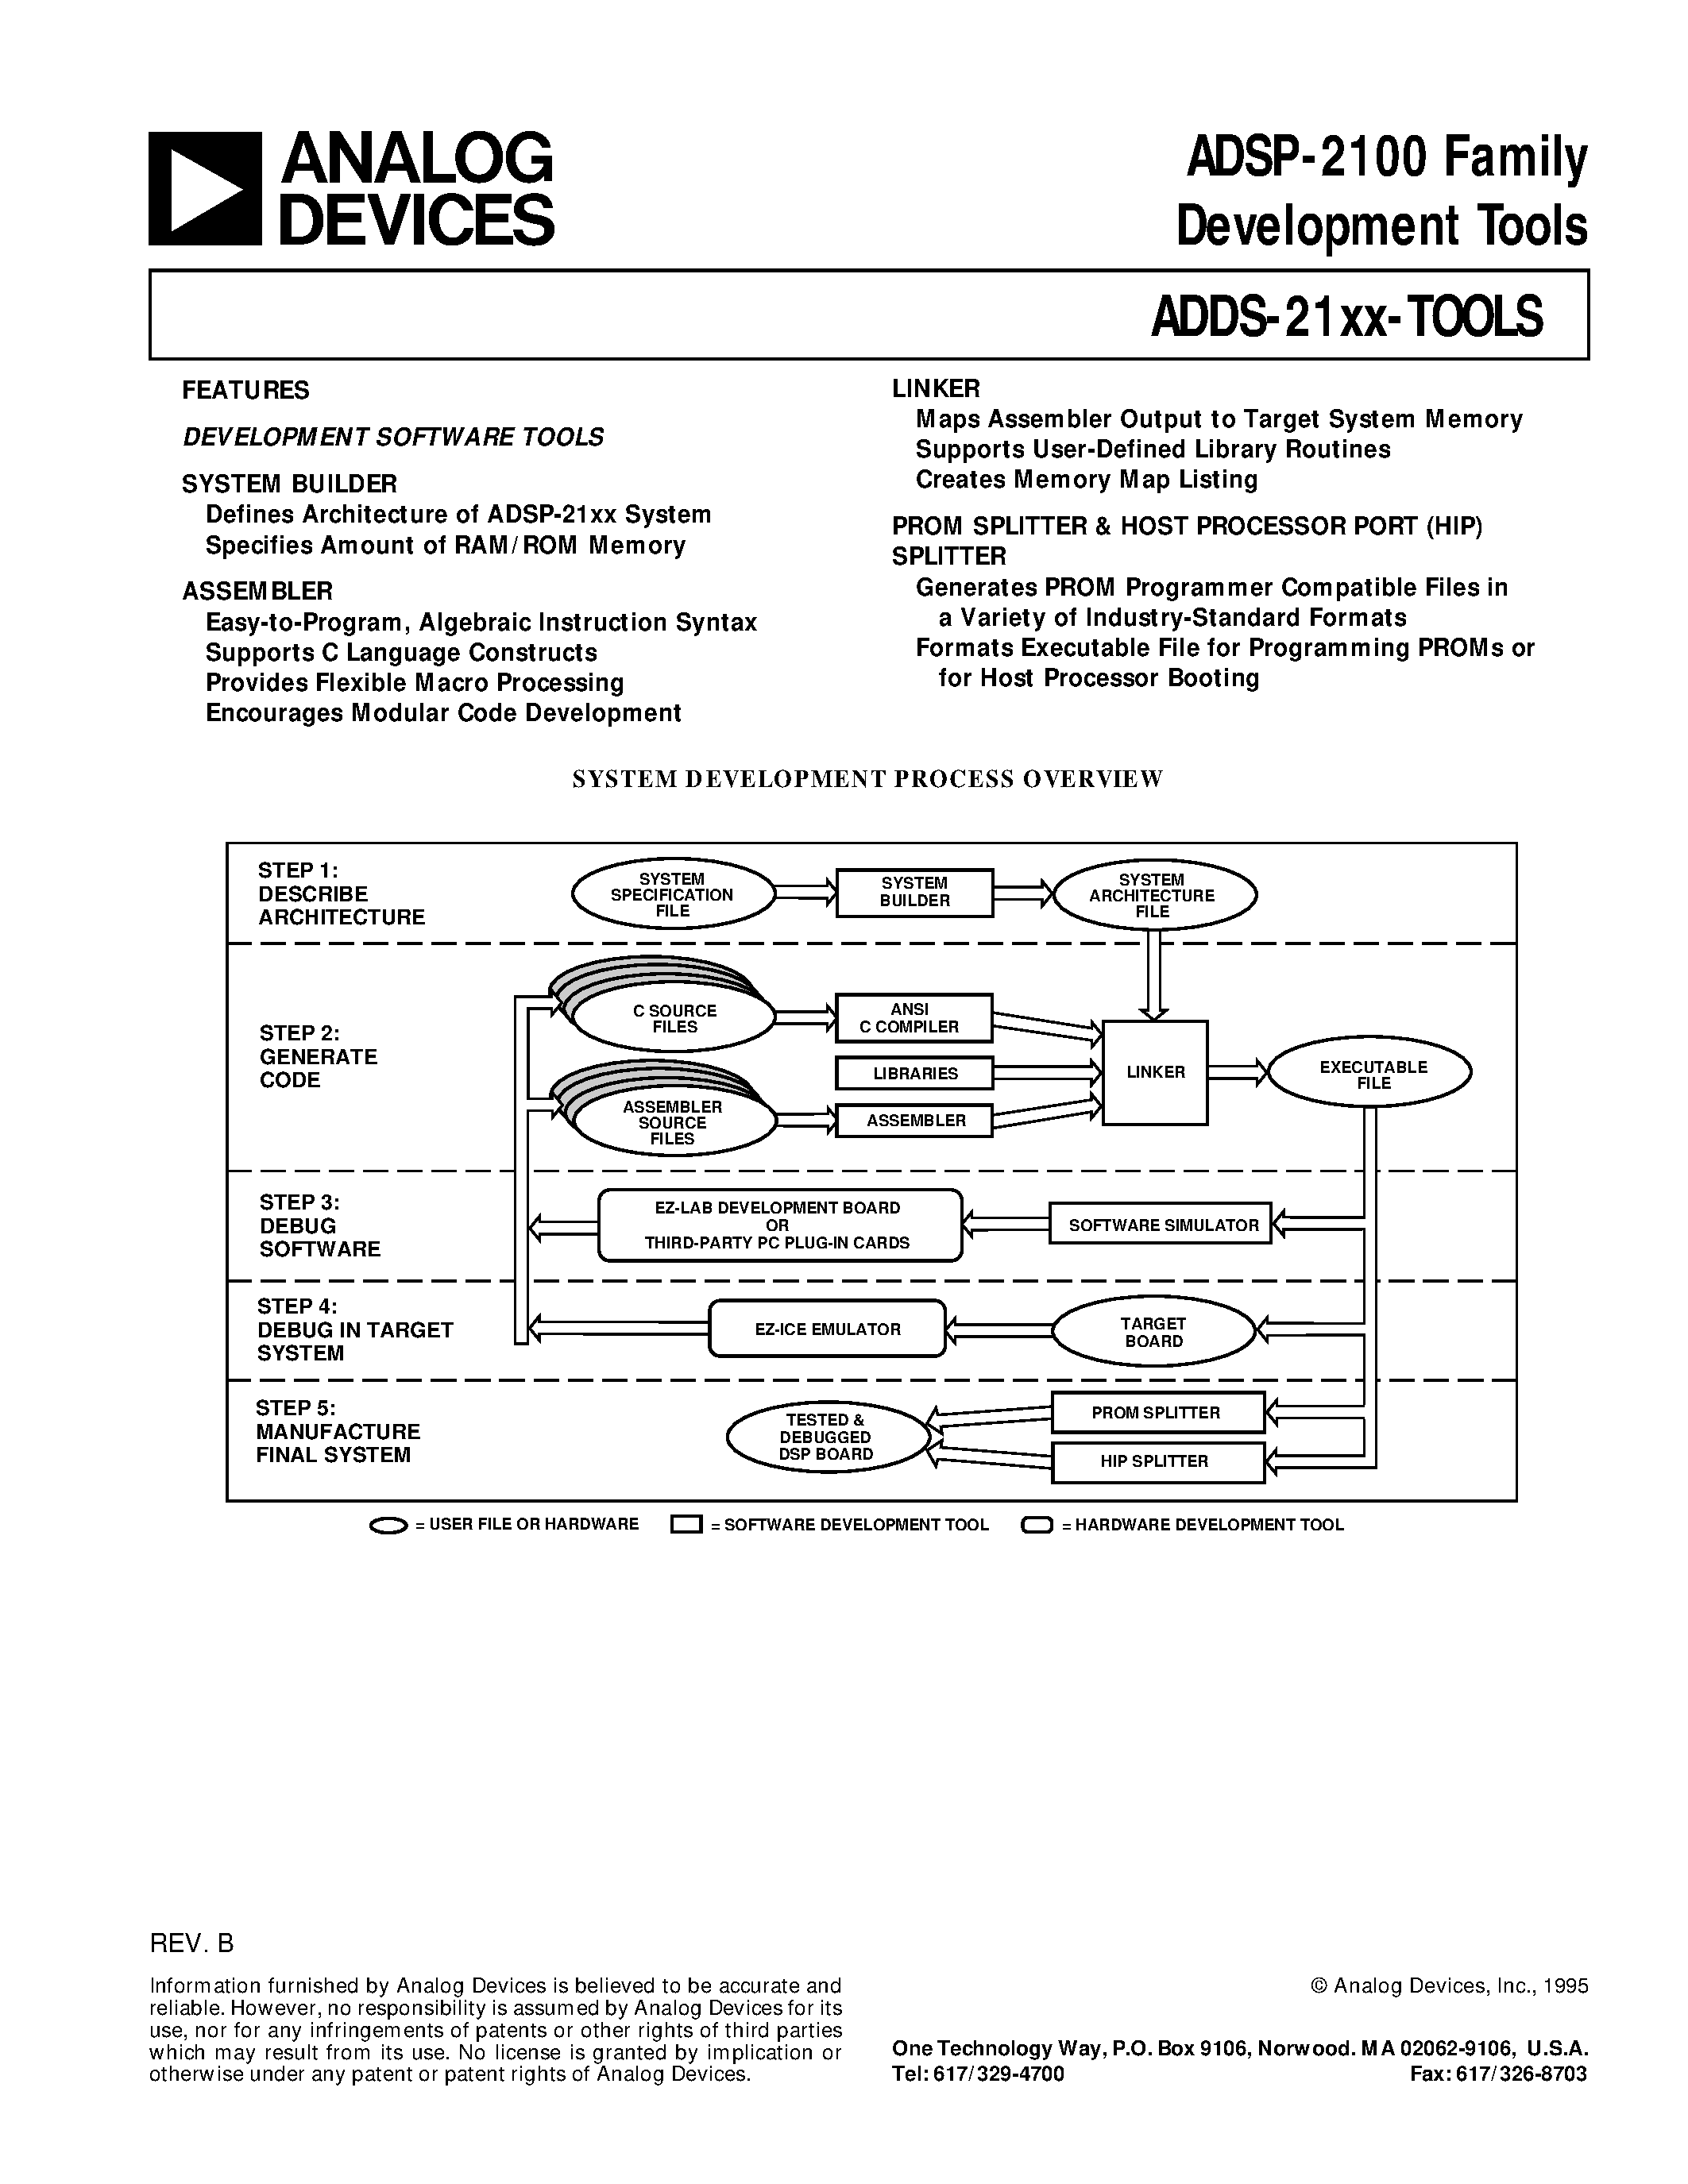 Даташит ADDS-2171-EZ-LAB - ADSP-2100 Family Development Tools страница 1